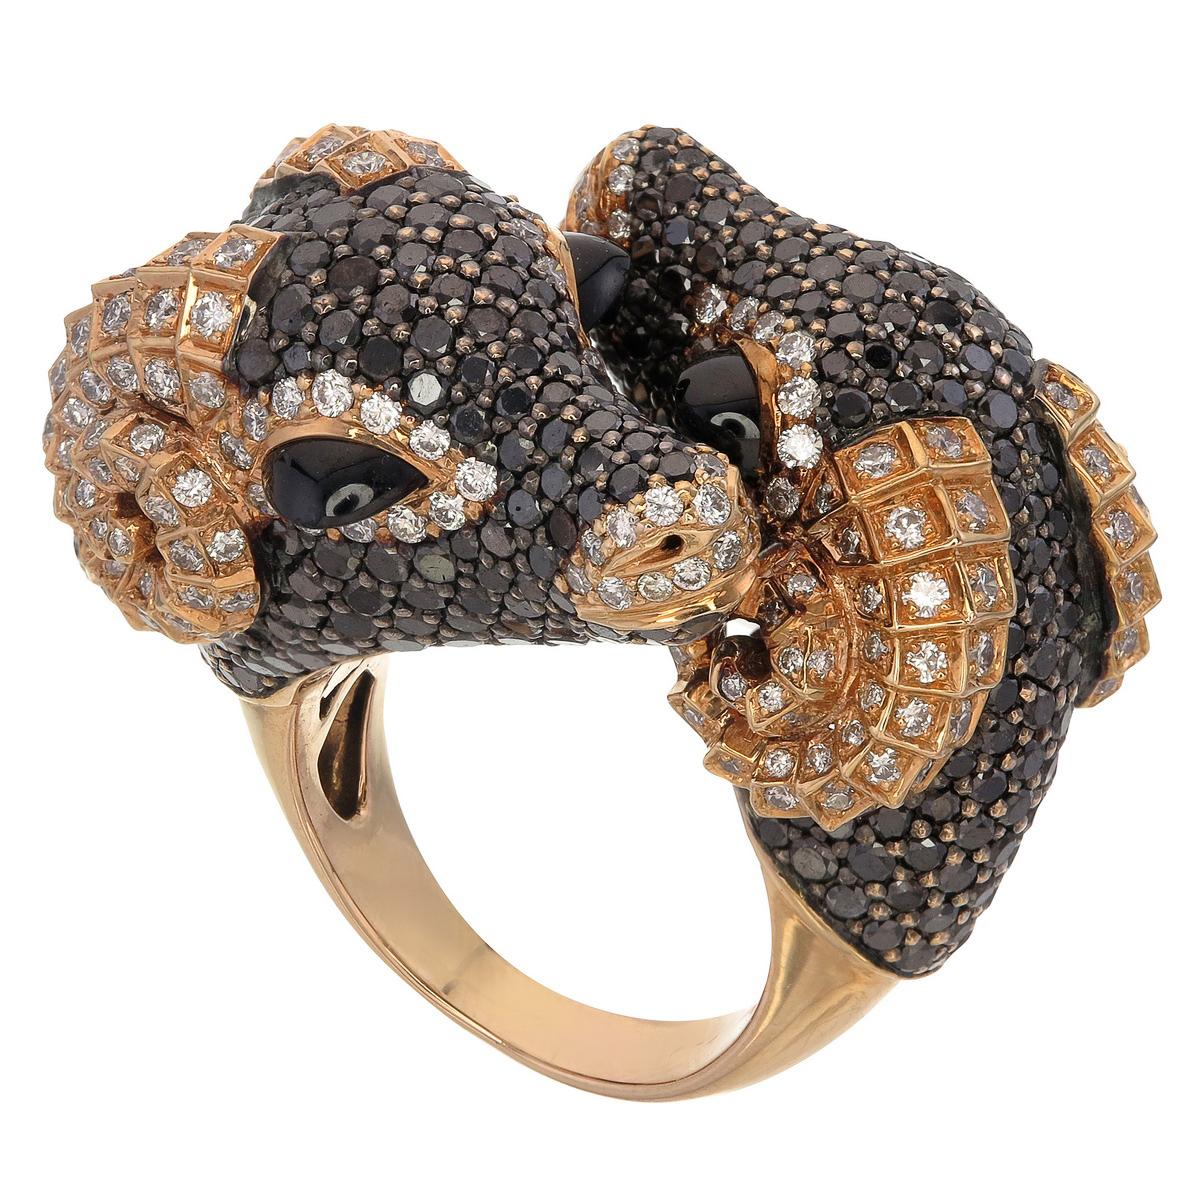 Sauvage Collection'S - Einzigartiger Ring

Der zähe, doppelgesichtige Widderring, der mit einem 7,72-karätigen schwarzen Diamanten verziert ist, klingt wie ein Wiegenlied von den Bergkämmen. Der schwarze Spinell von 2,20 Karat trägt zur